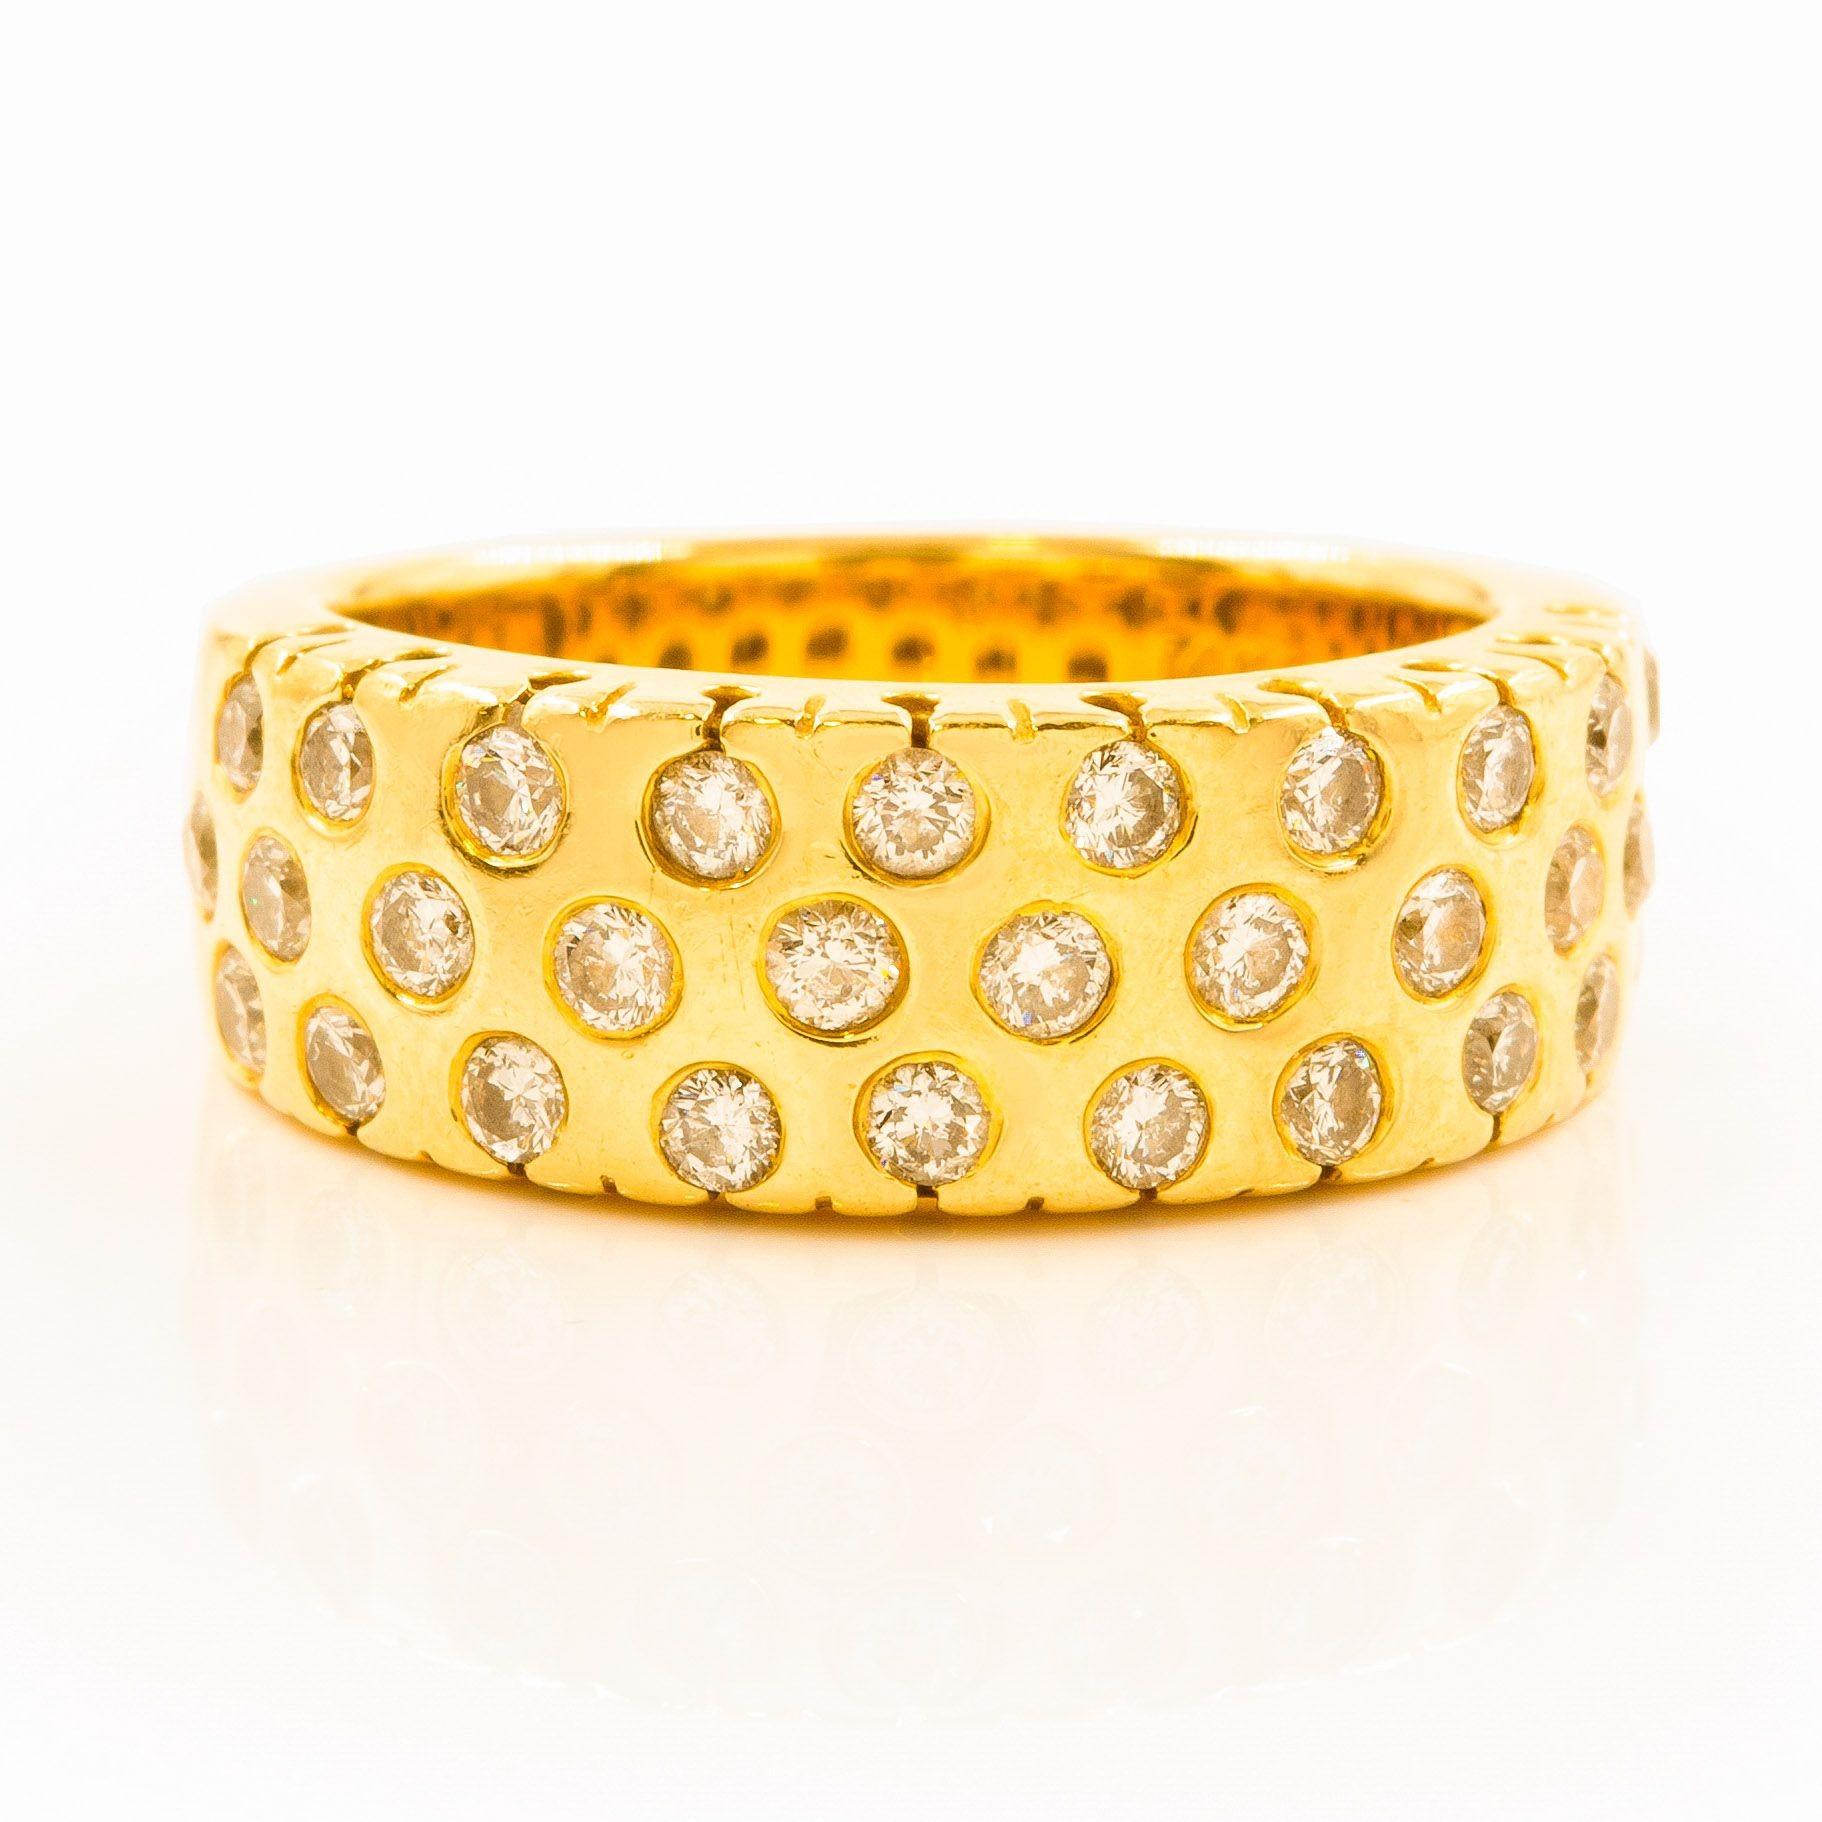 14 Karat Gelbgold & Edelsteinring von Sonia Bitton, Größe 7
Artikel Nr. C104618

Ein wunderschöner Ring aus 14-karätigem Gelbgold, der mit Edelsteinen besetzt ist. Das elegante Design mit mehreren Steinen, die über das Band verteilt sind, verleiht